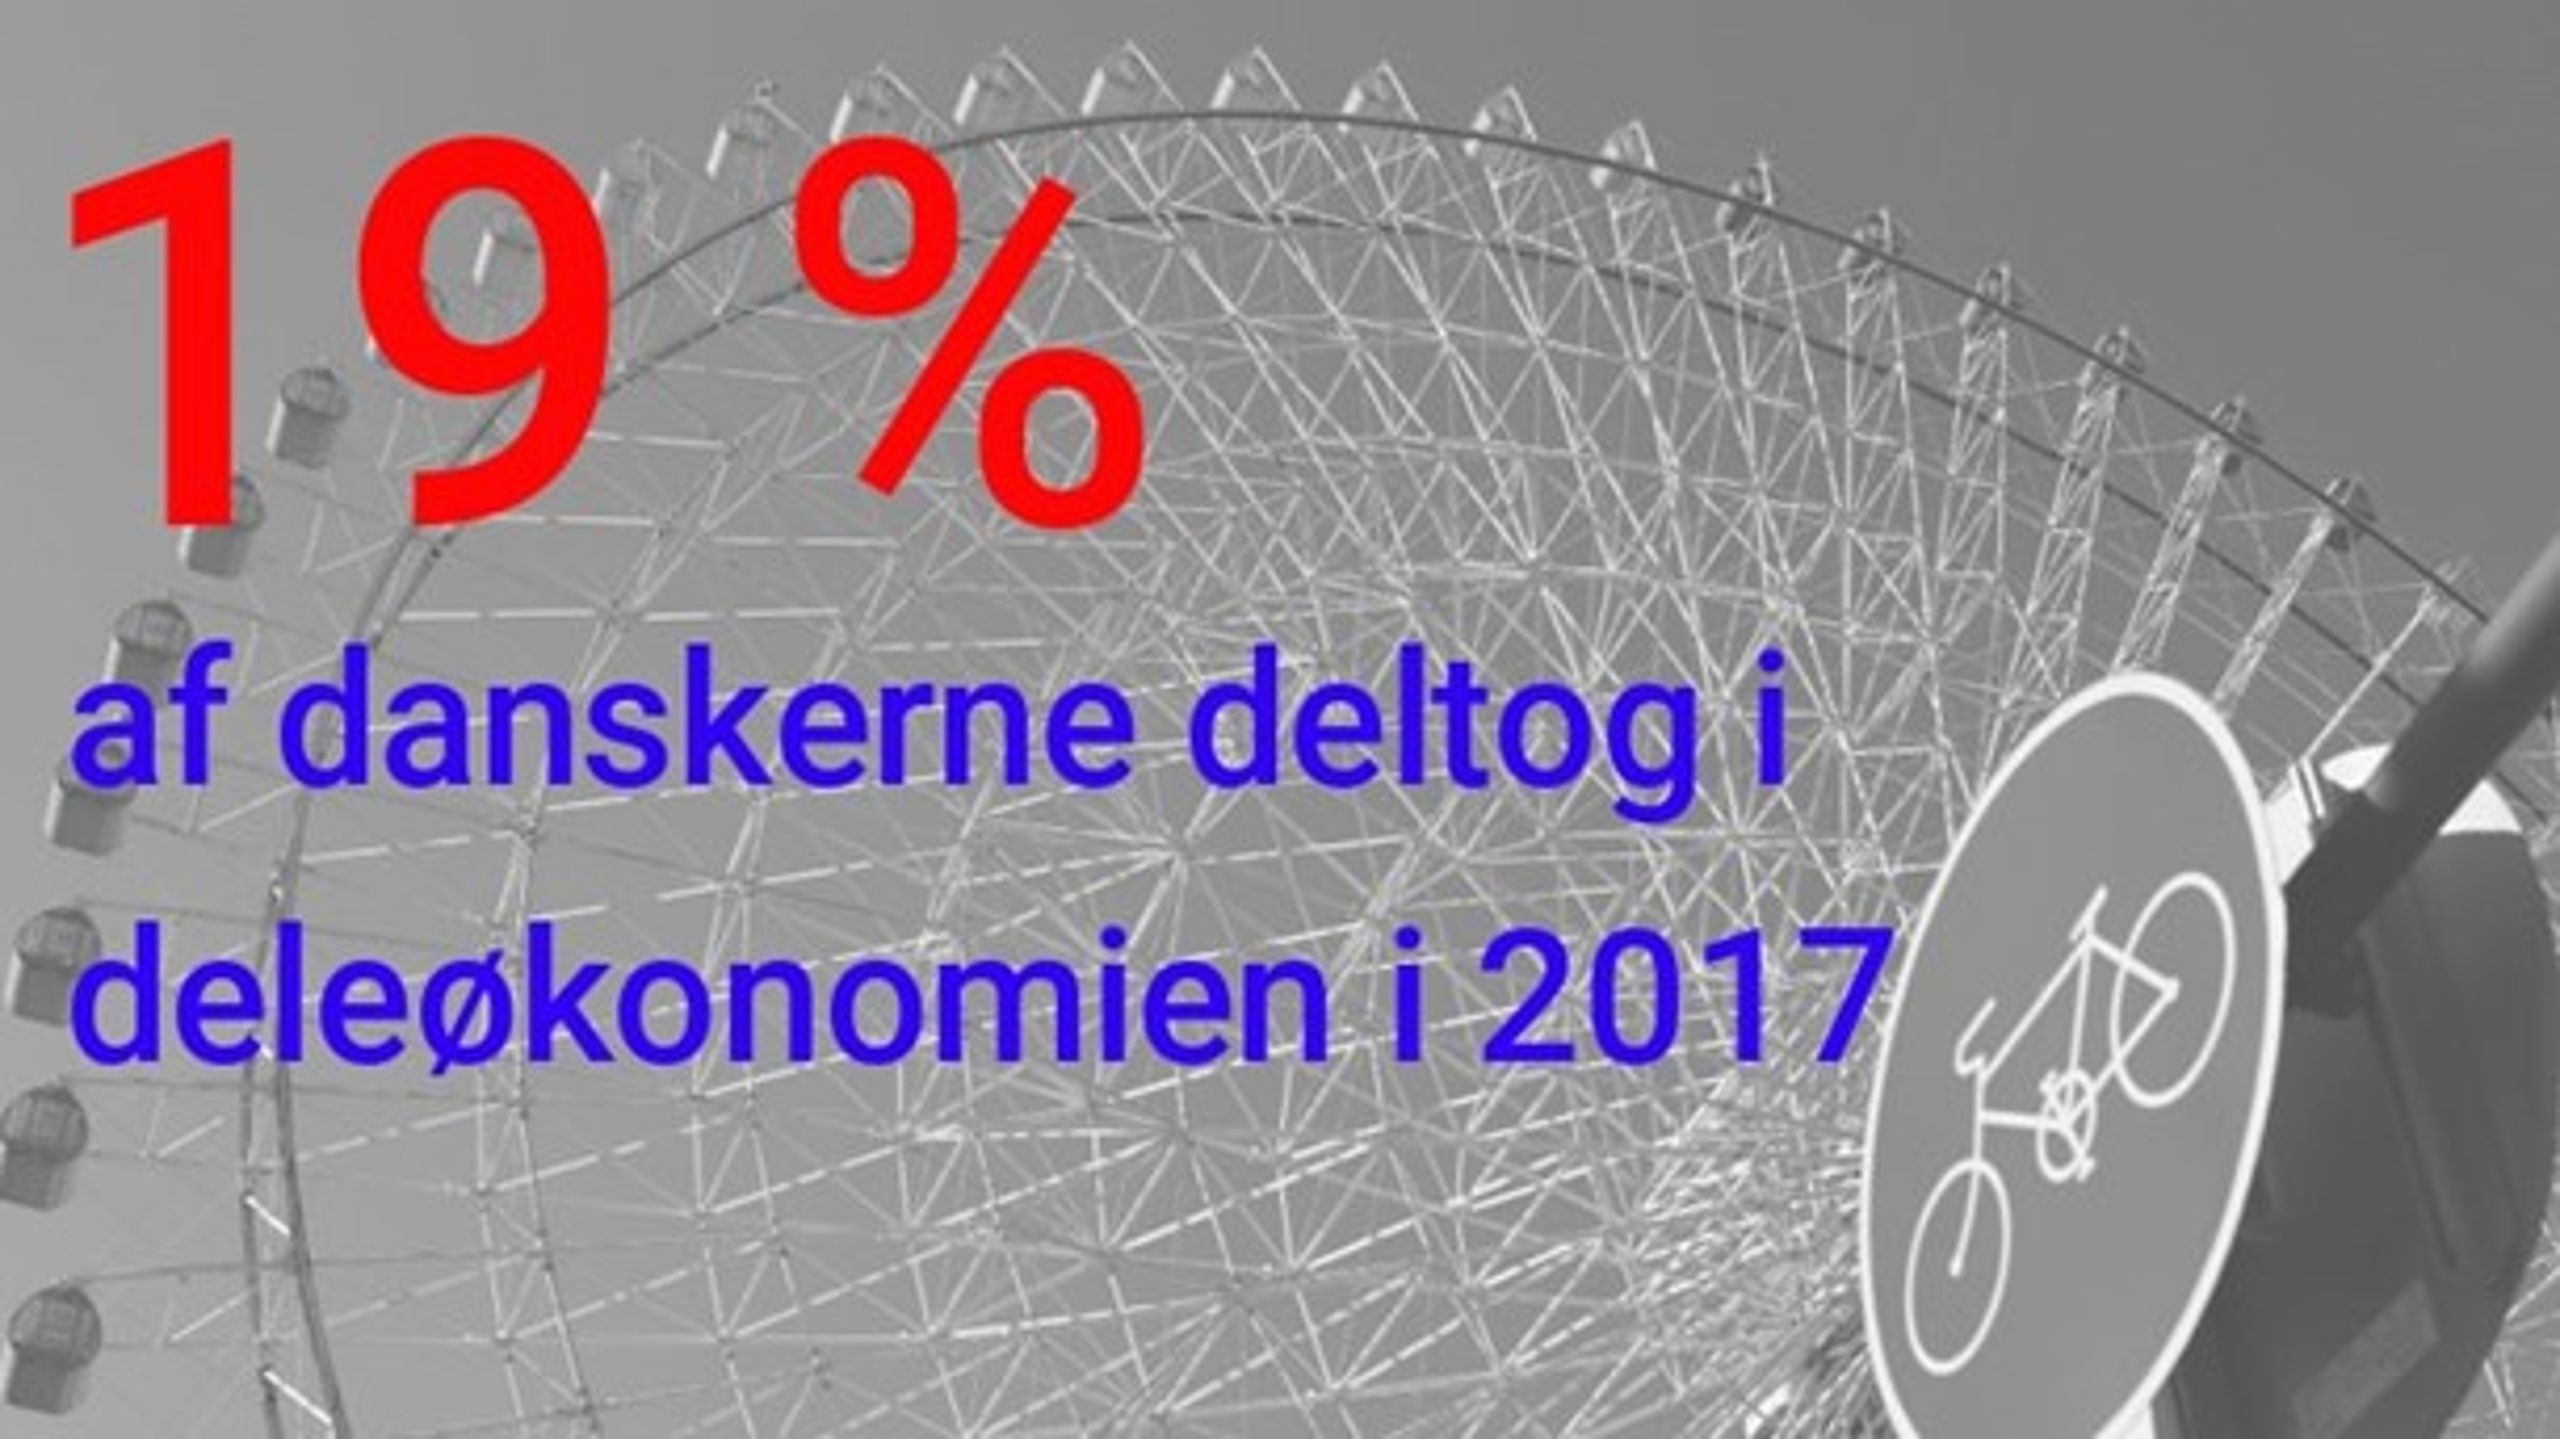 Erhvervsministeriet: Tallet er fundet i rapporten "Deleøkonomien i Danmark" og indbefatter de 16-74-årige.&nbsp;